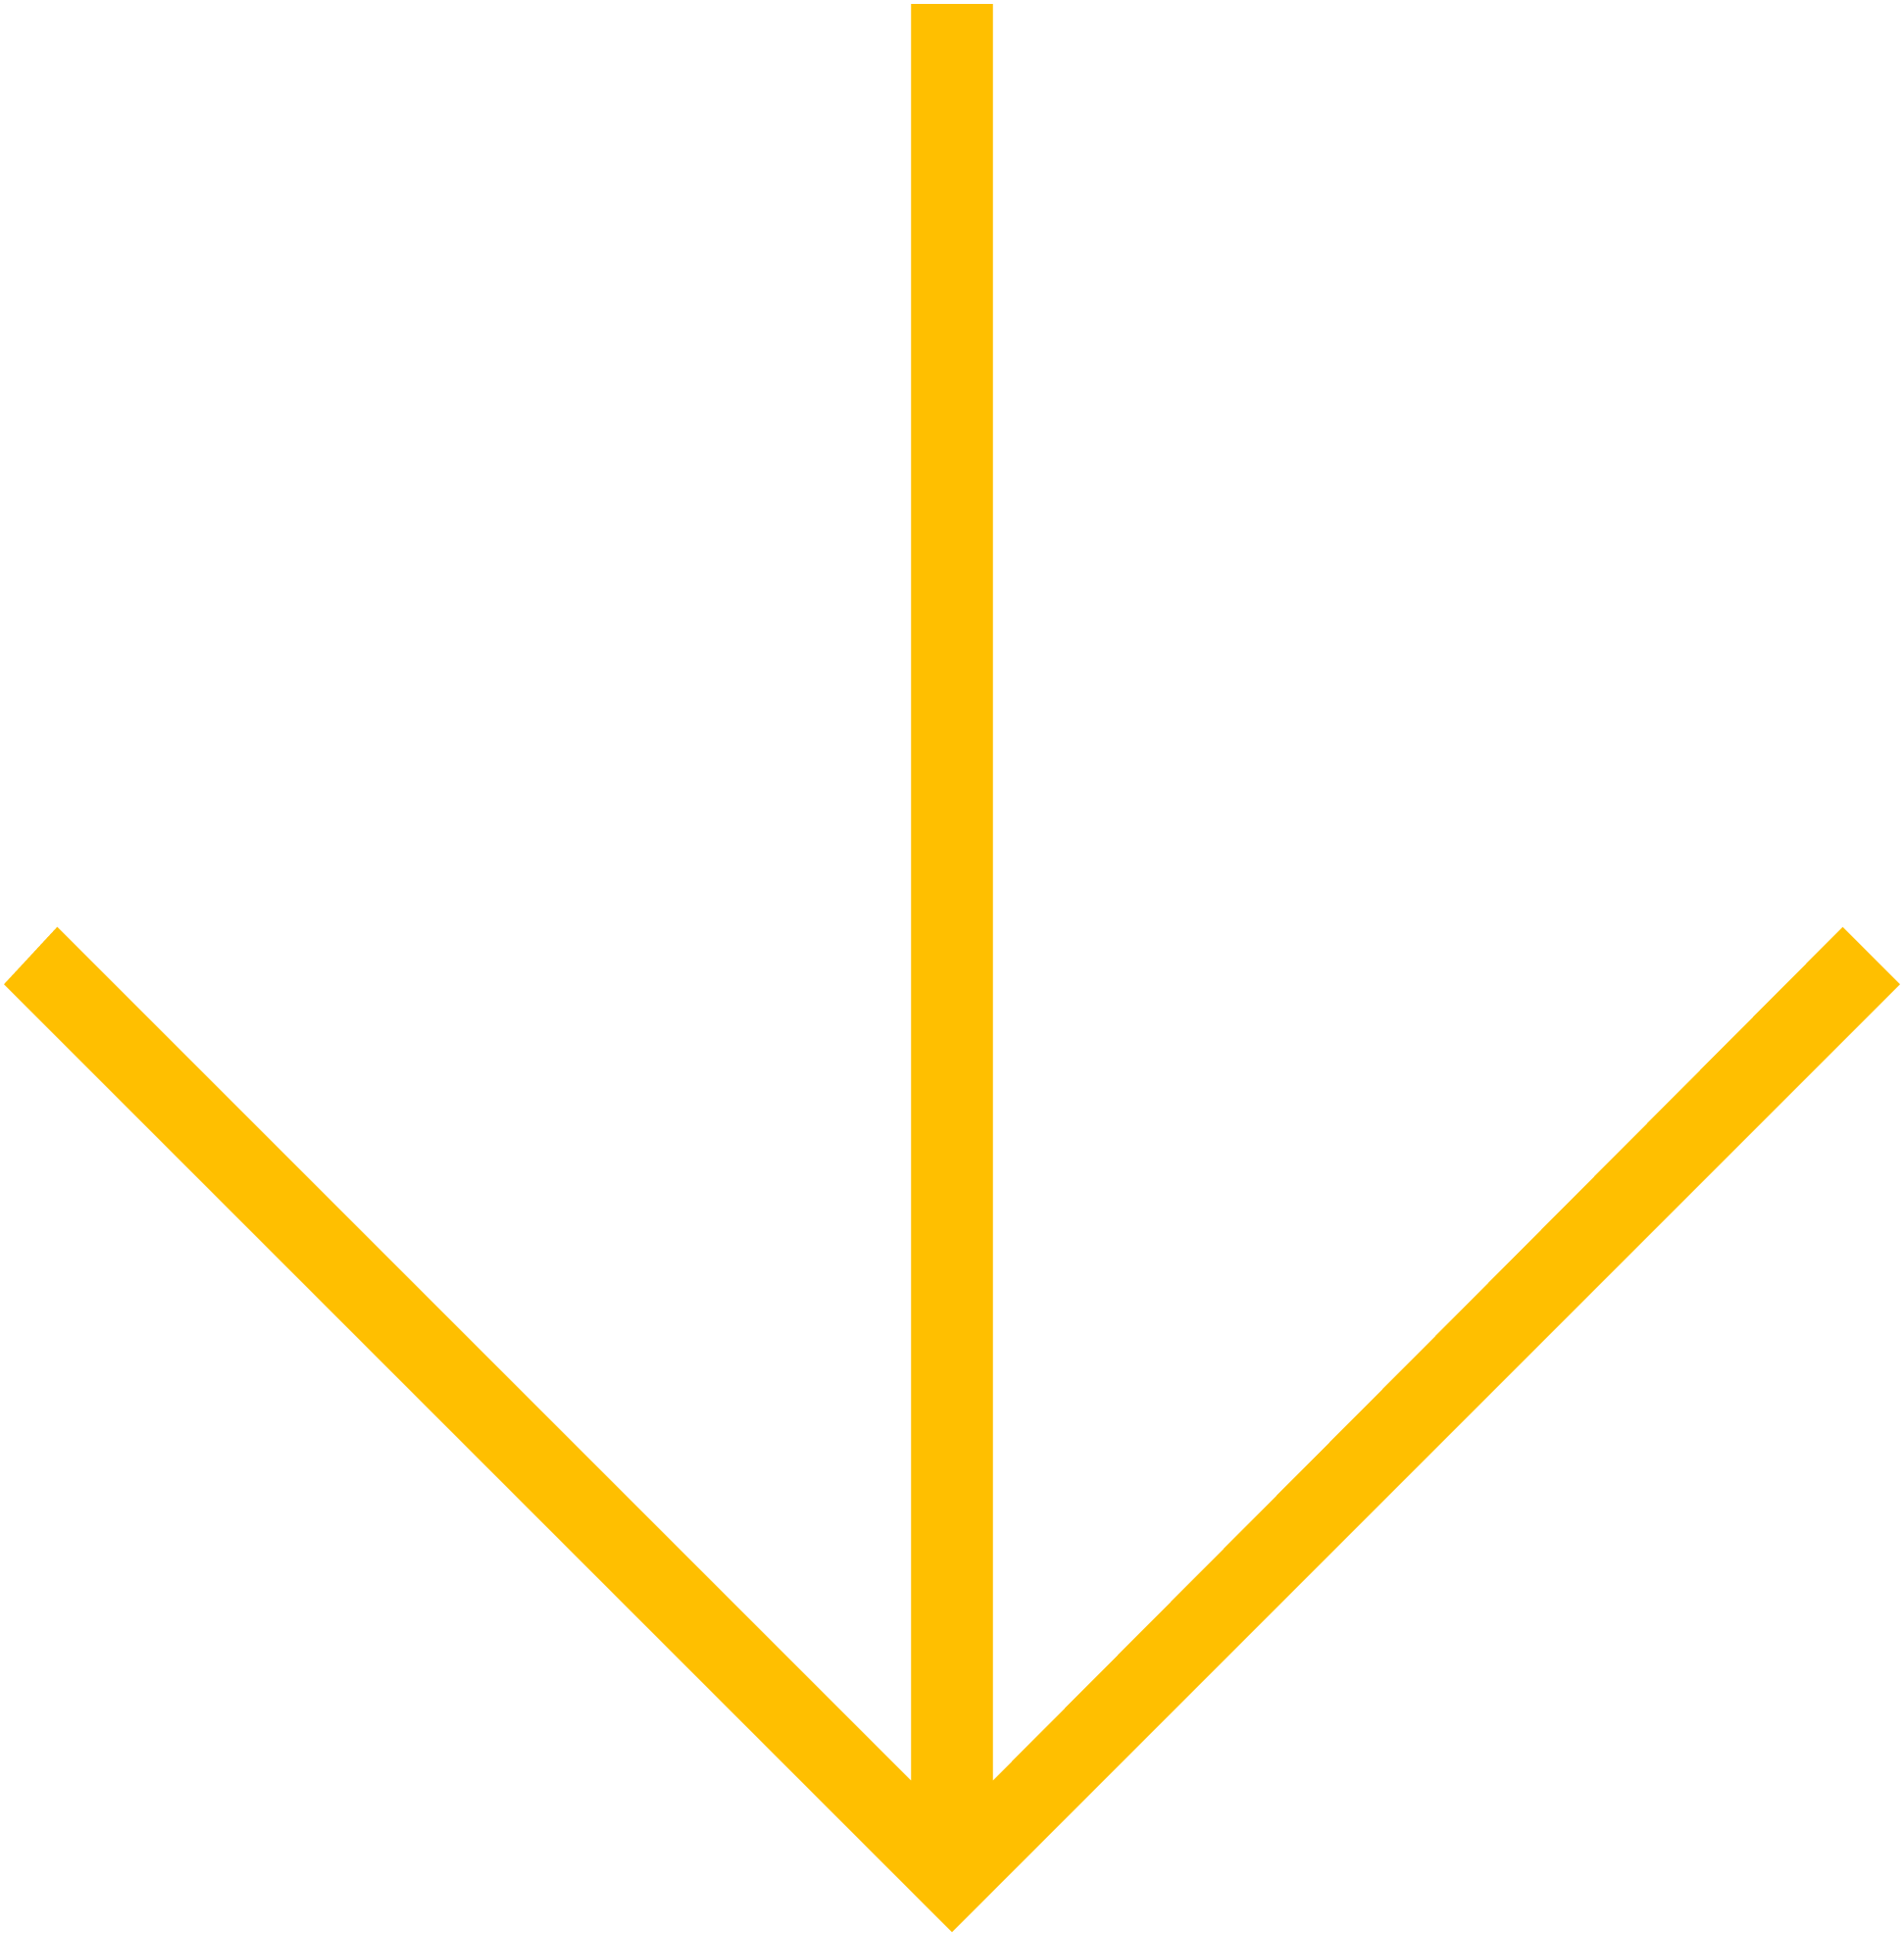 custom-cover-arrow